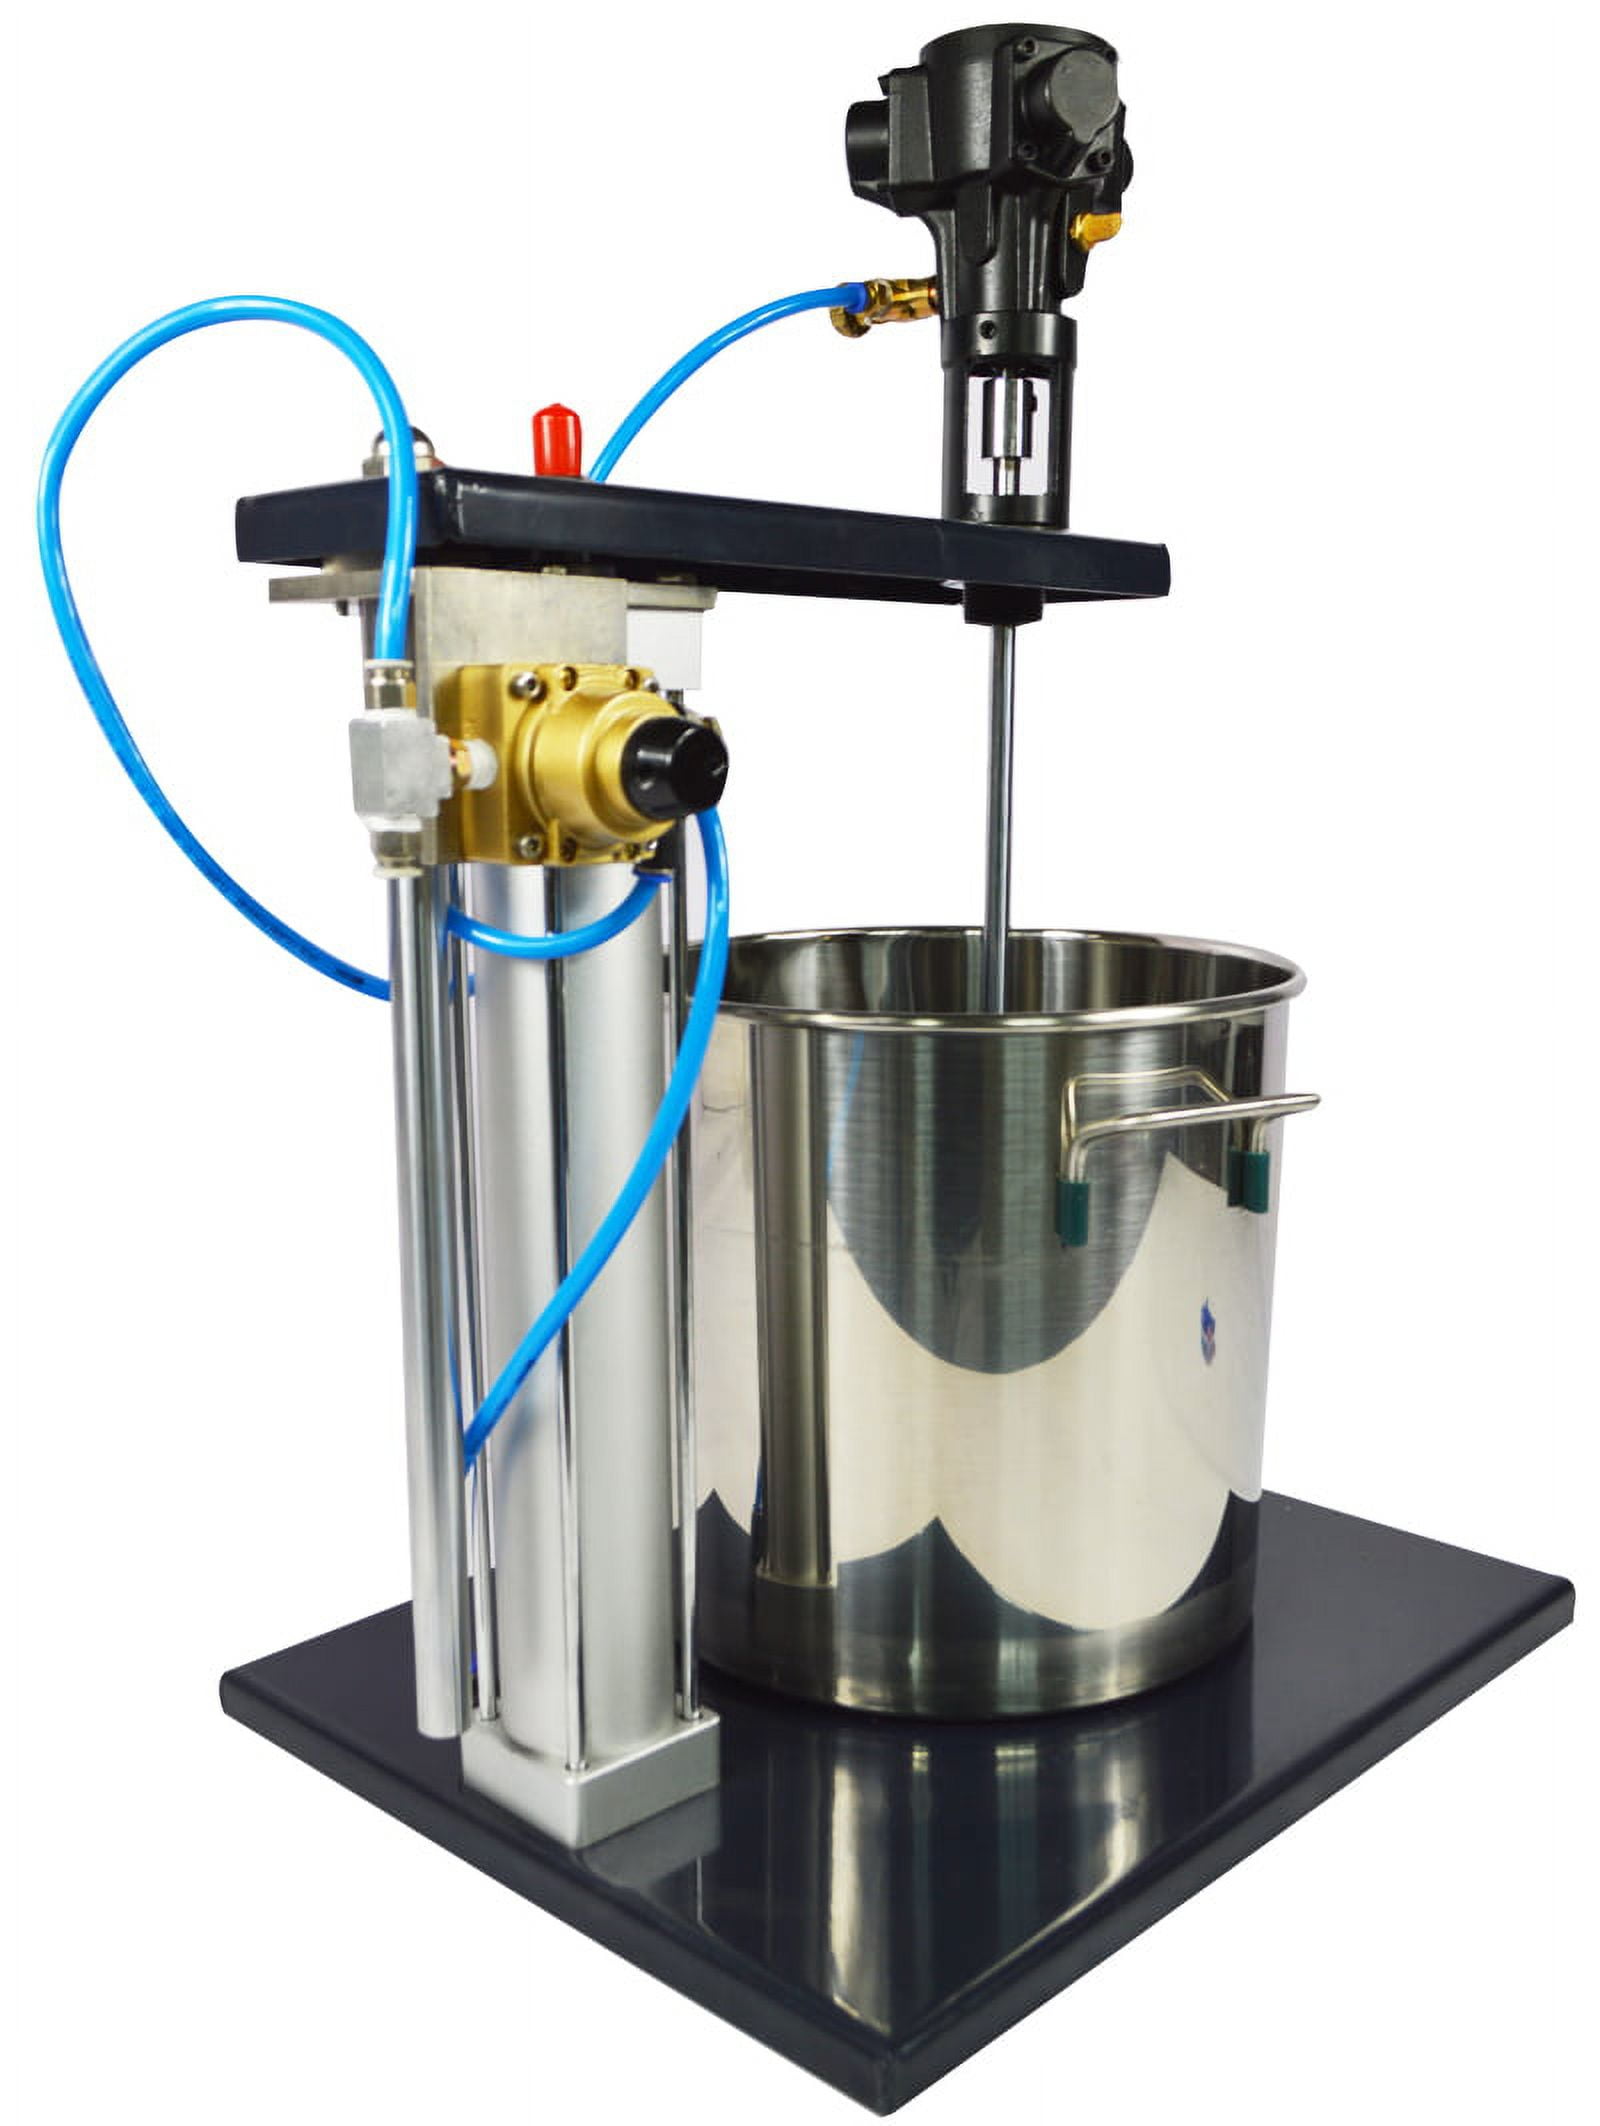 5 Gallons Pneumatic Mixer Stirrer Lifting Blades Paint Air Mixing